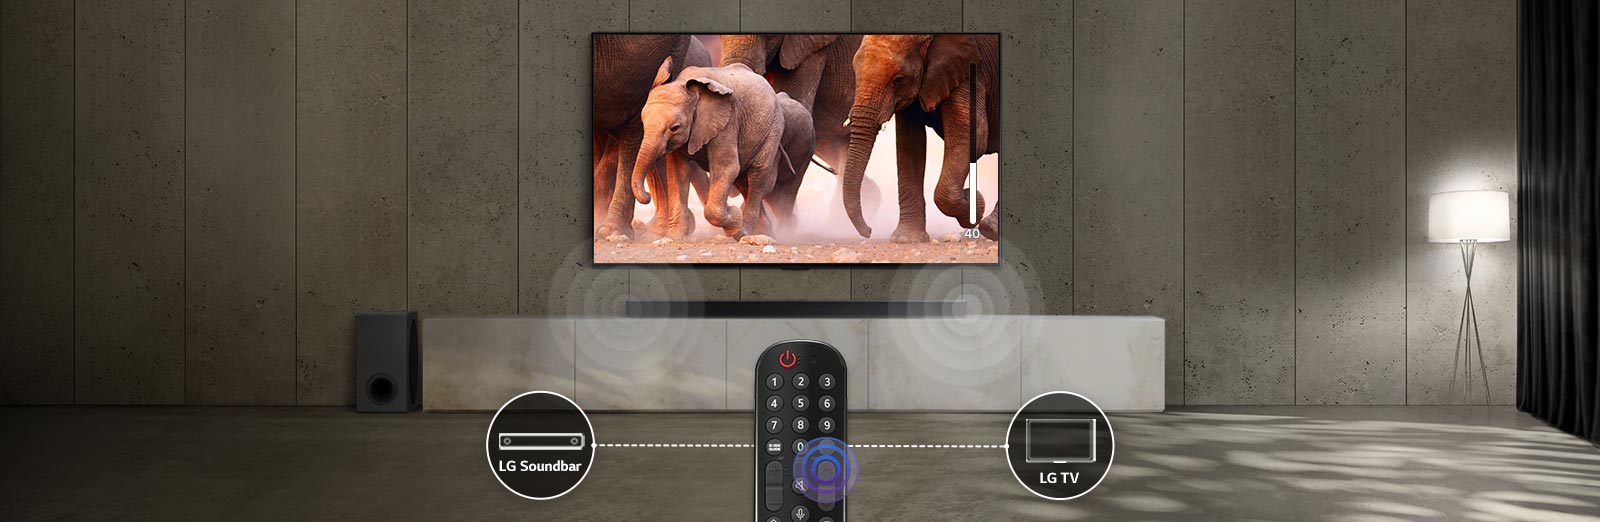 Auf einem Fernseher in einem Raum mit dezentem Licht sind Elefanten zu sehen. Die Klangausgabe der unter dem Fernseher stehenden Soundbar wird optisch dargestellt. Am unteren Bildrand sehen wir eine TV-Fernbedienung. Die kreisförmigen Symbole von LG Soundbar und LG TV, die sich links und rechts von der Fernbedienung befinden, sind über eine gestrichelte Linie mit dieser verbunden.